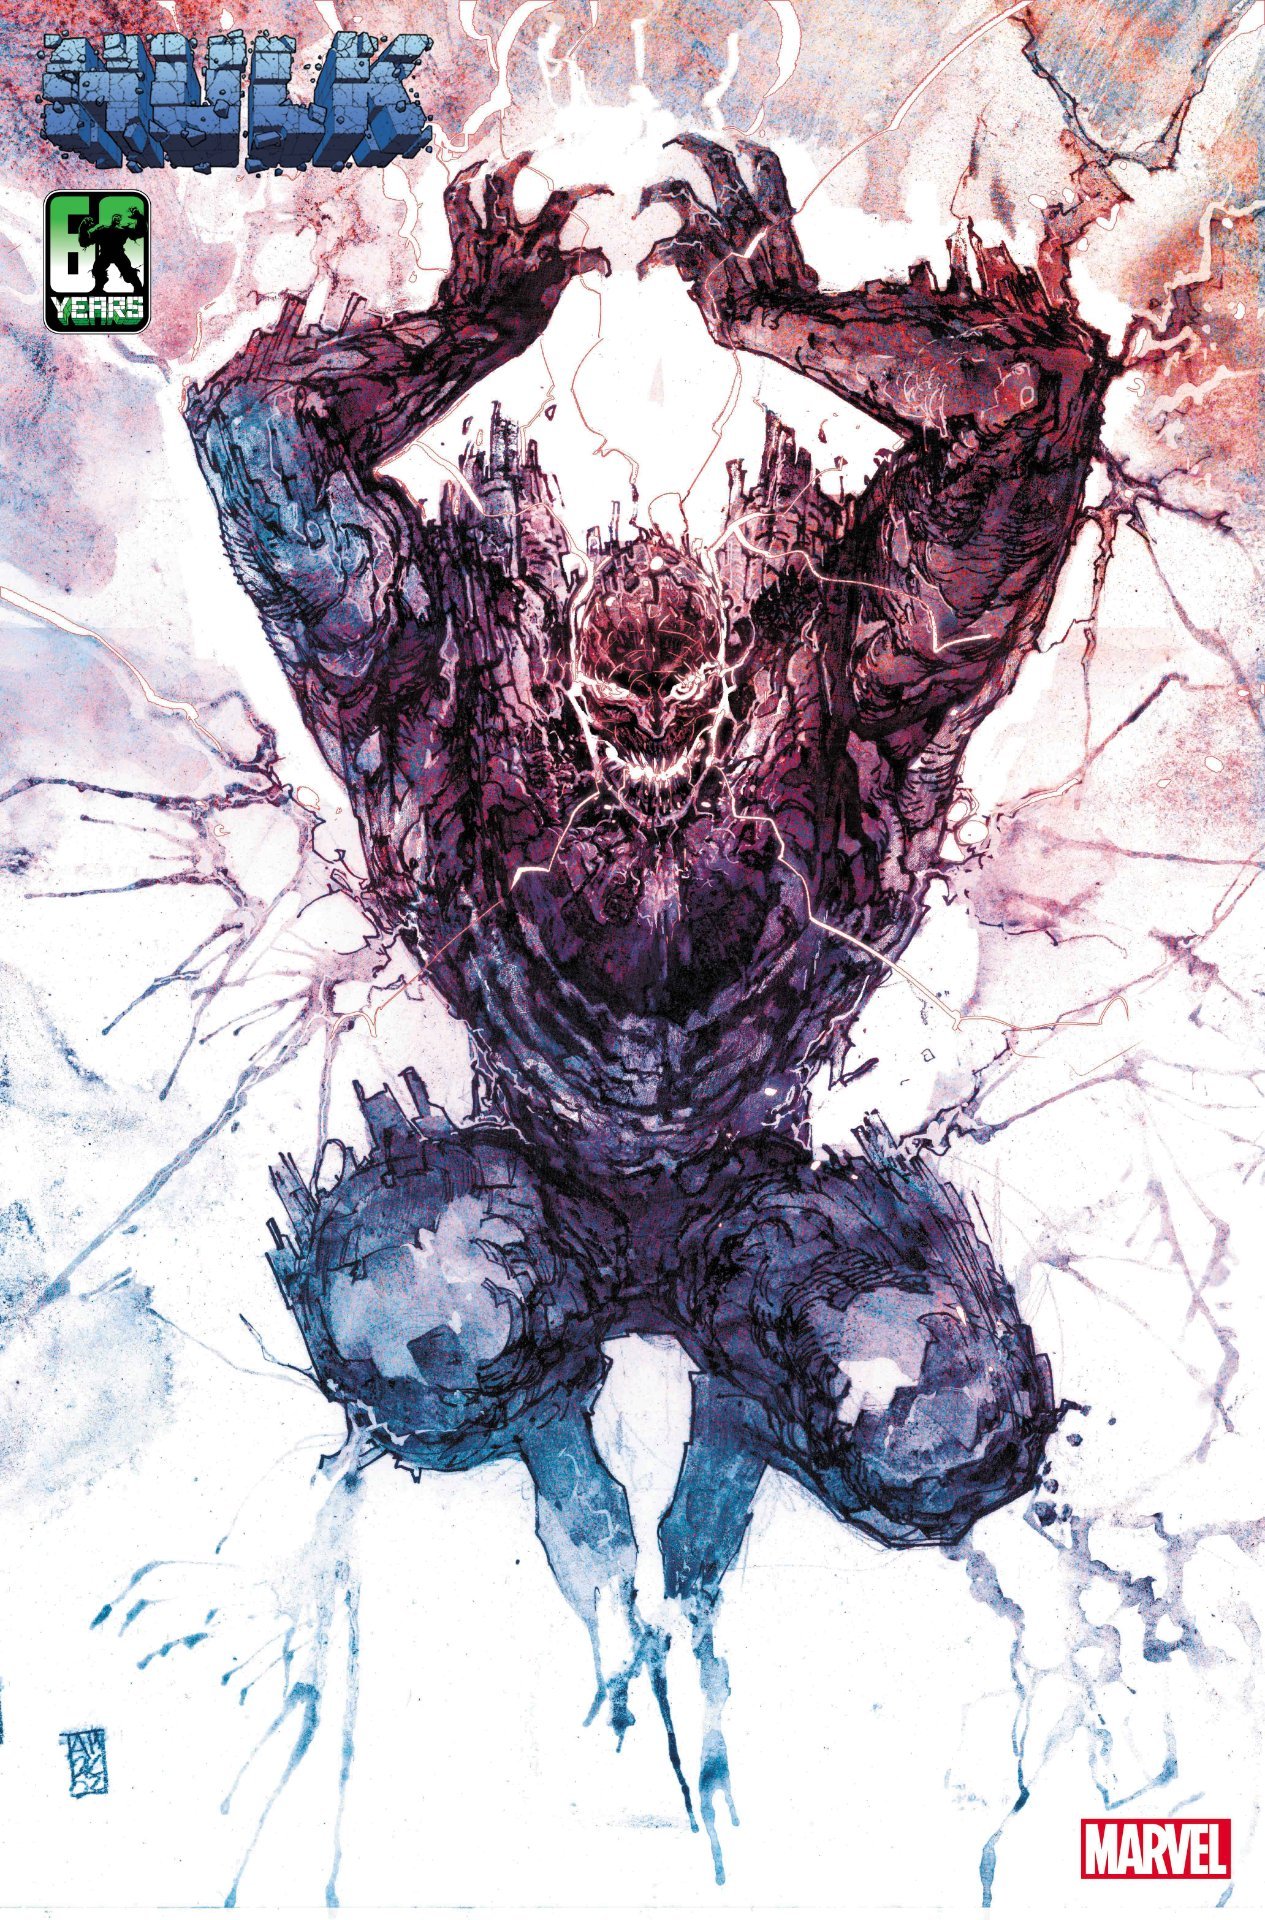 Variant cover di Hulk 6 di Alex Maleev, che raffigura Titan